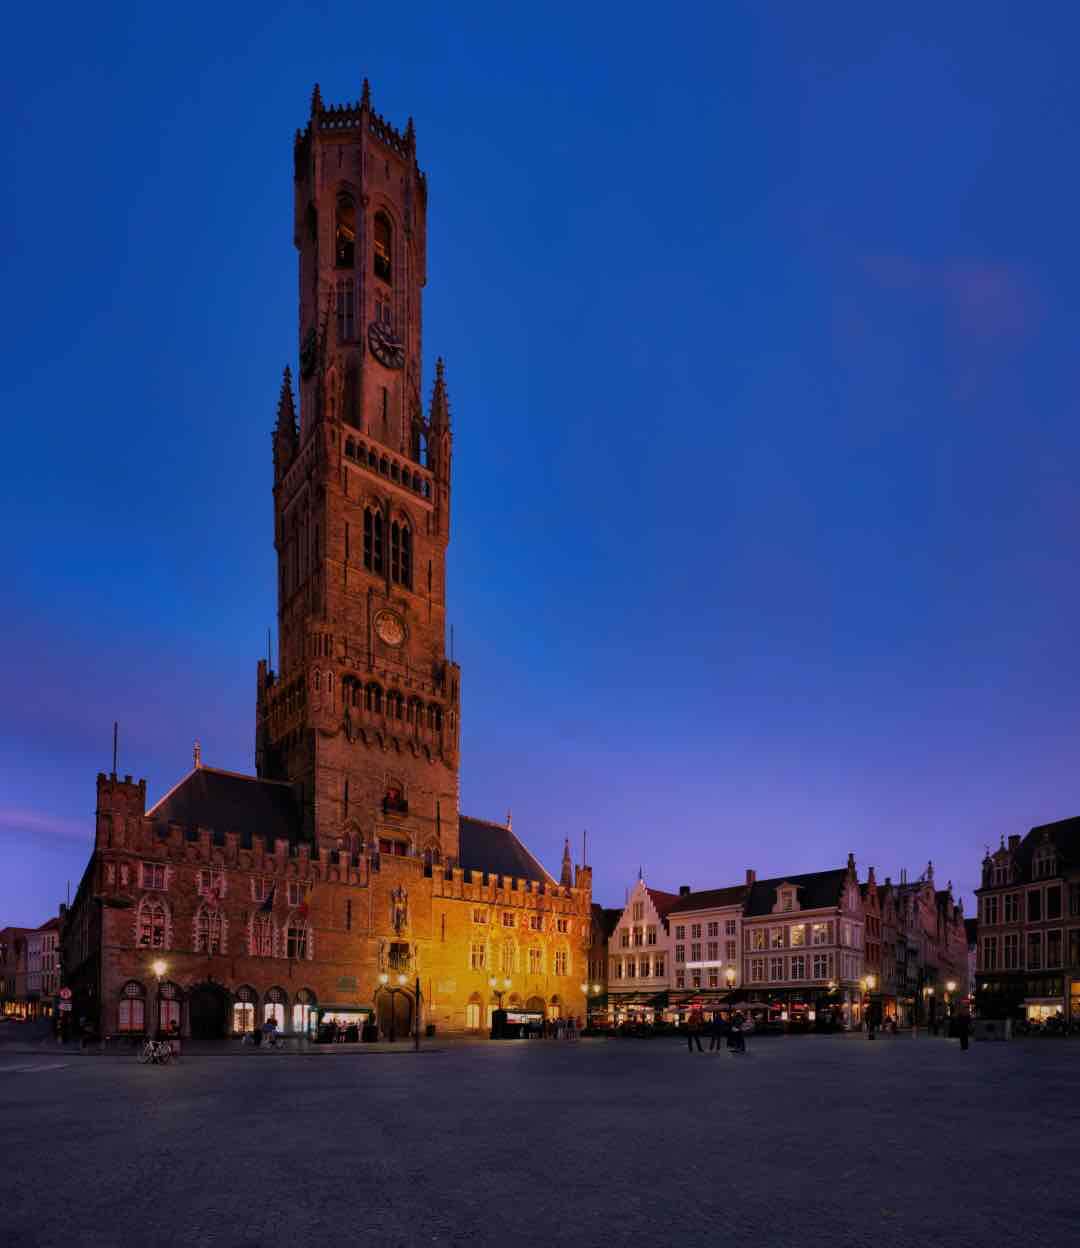 The Belfry in Bruges, Belgium.